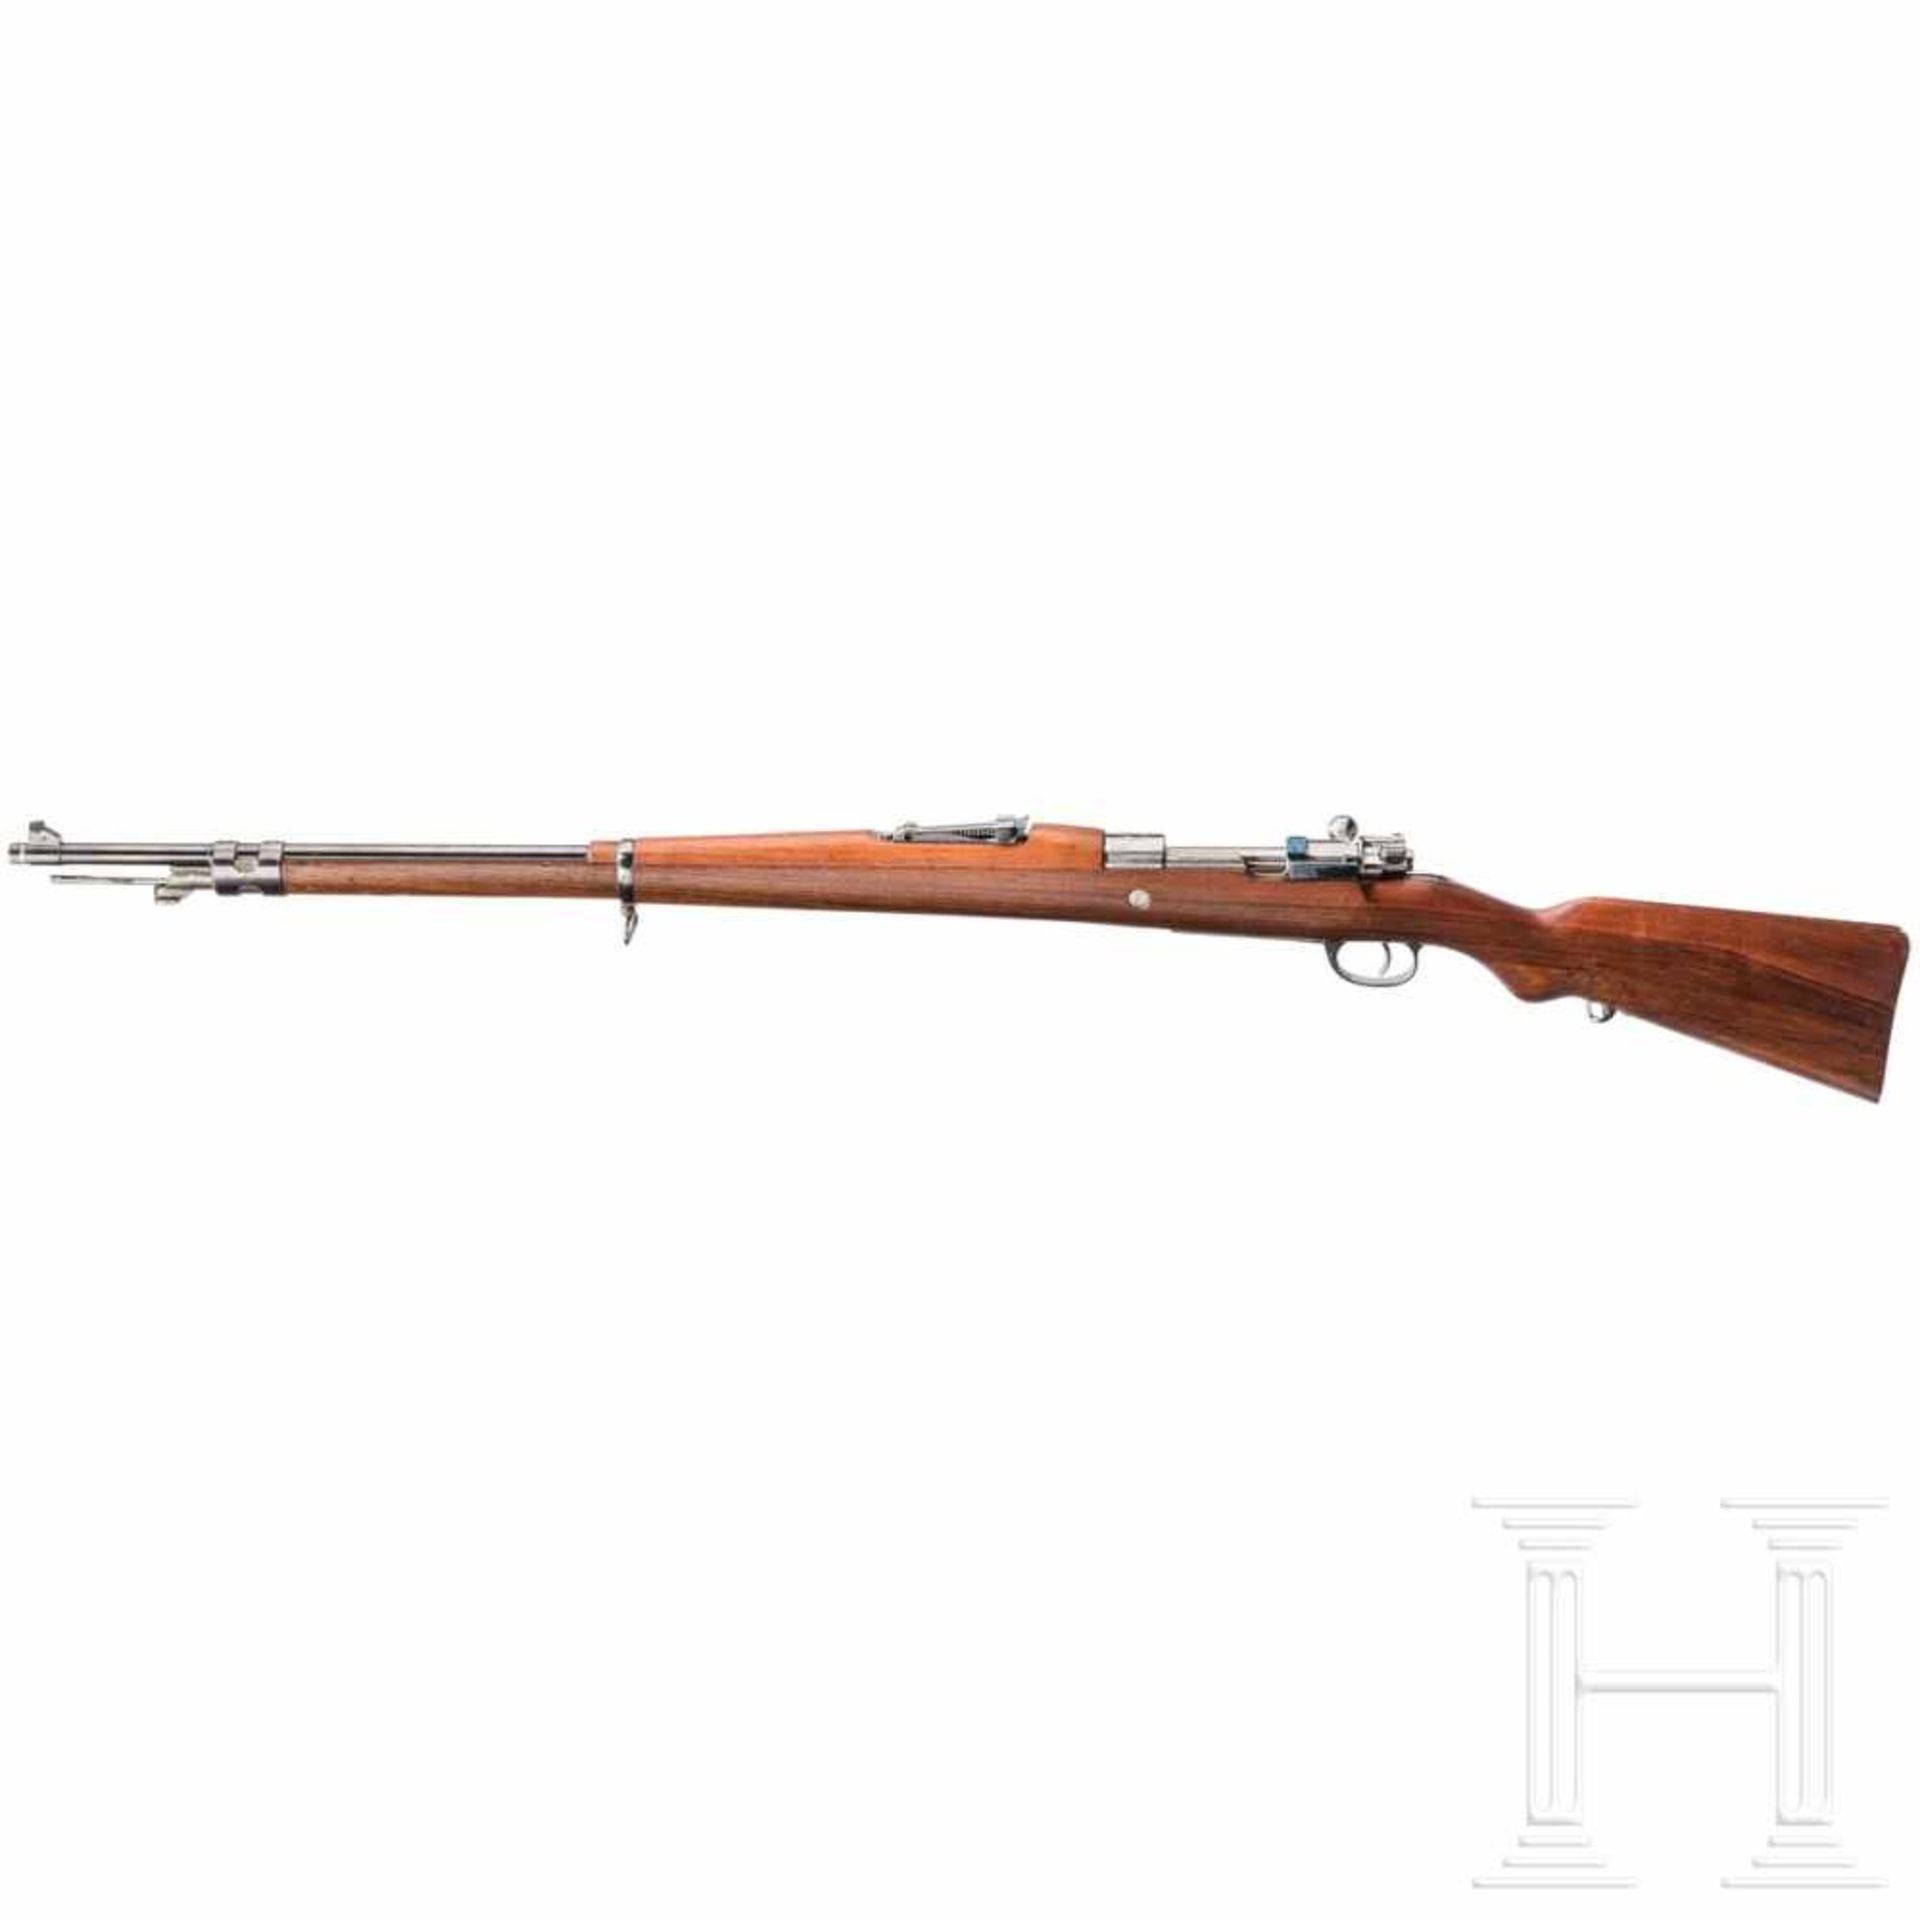 Argentinien - Gewehr Mod. 1909, DWMKal. 7,65 x 53 Arg., Nr. H8425, nummergleich. Lauf blank. - Bild 2 aus 2